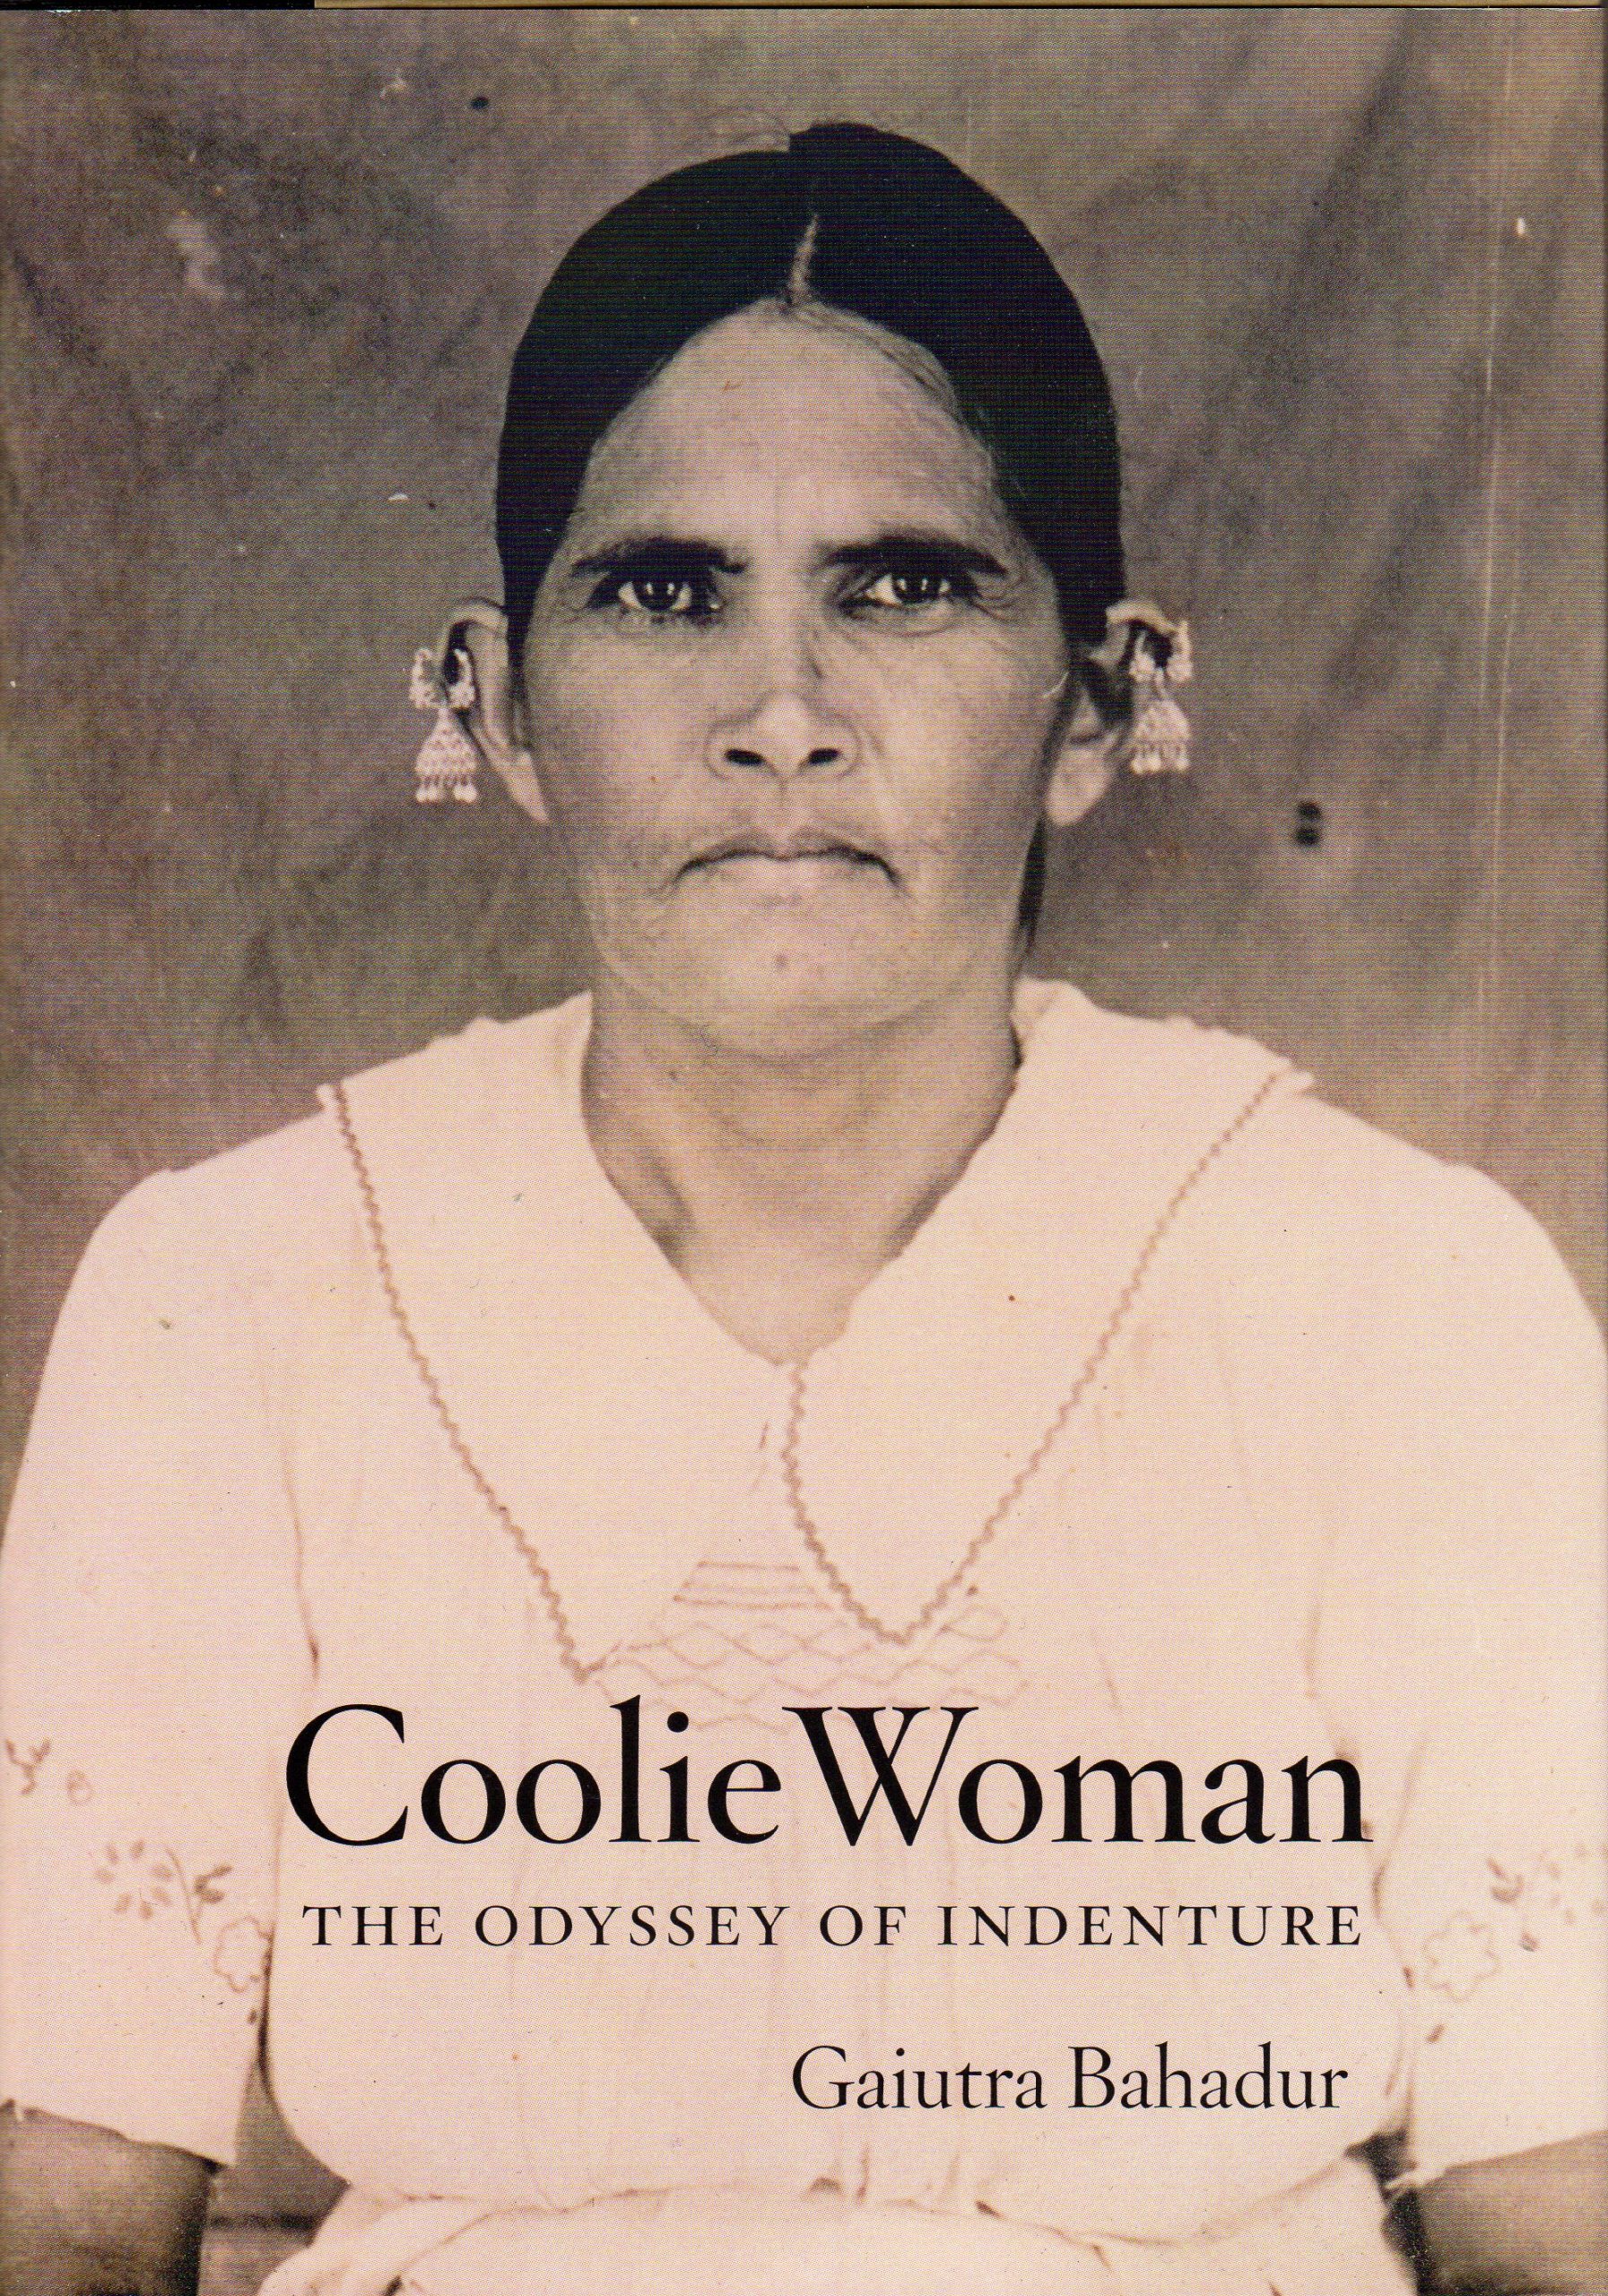 coolie-woman-by-gaiutra-bahadur.jpg